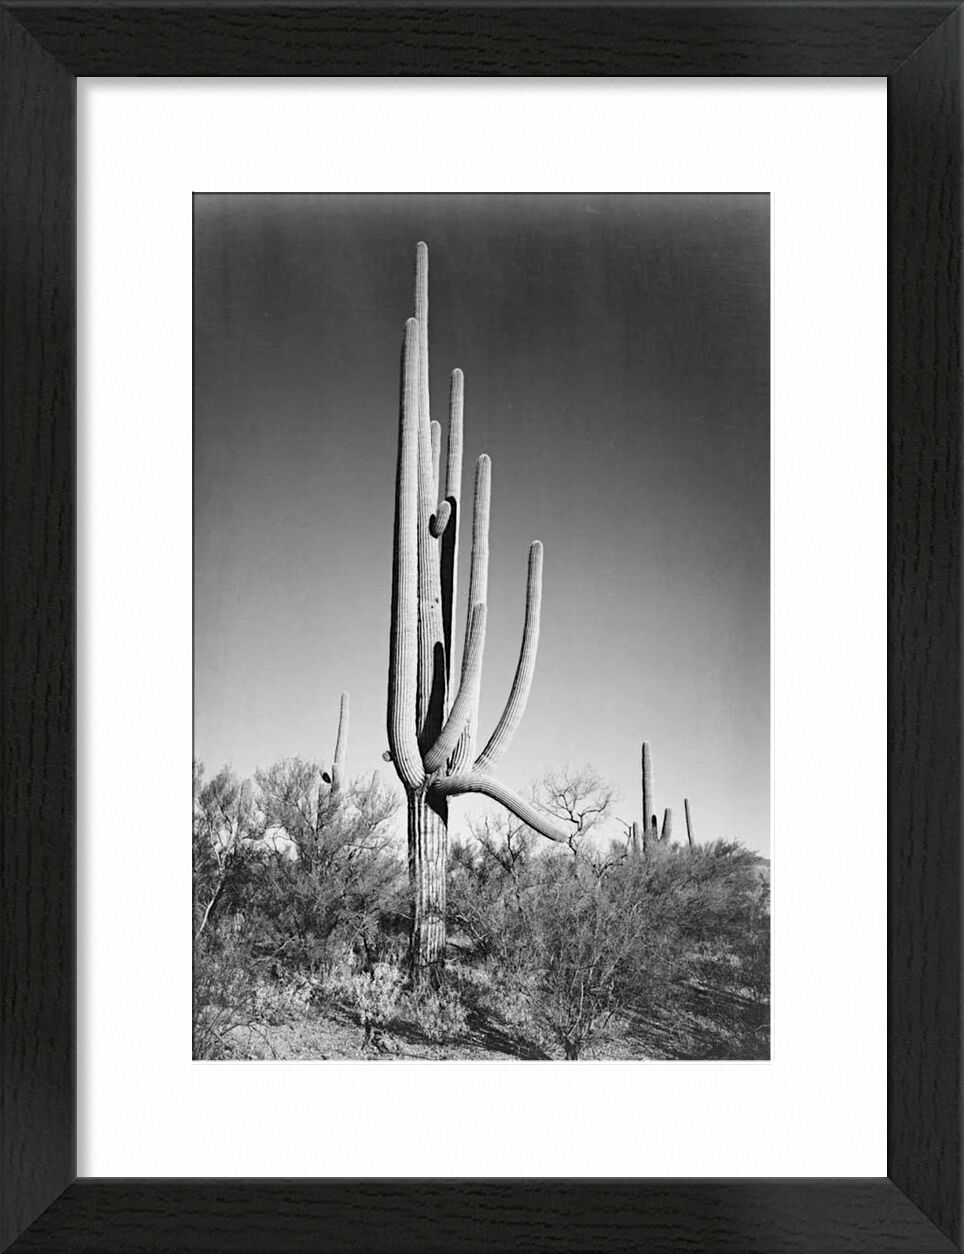 Full View of Cactus and Surrounding Shrubs - Ansel Adams von Bildende Kunst, Prodi Art, ANSEL ADAMS, Kaktus, Wildnis, Schwarz und weiß